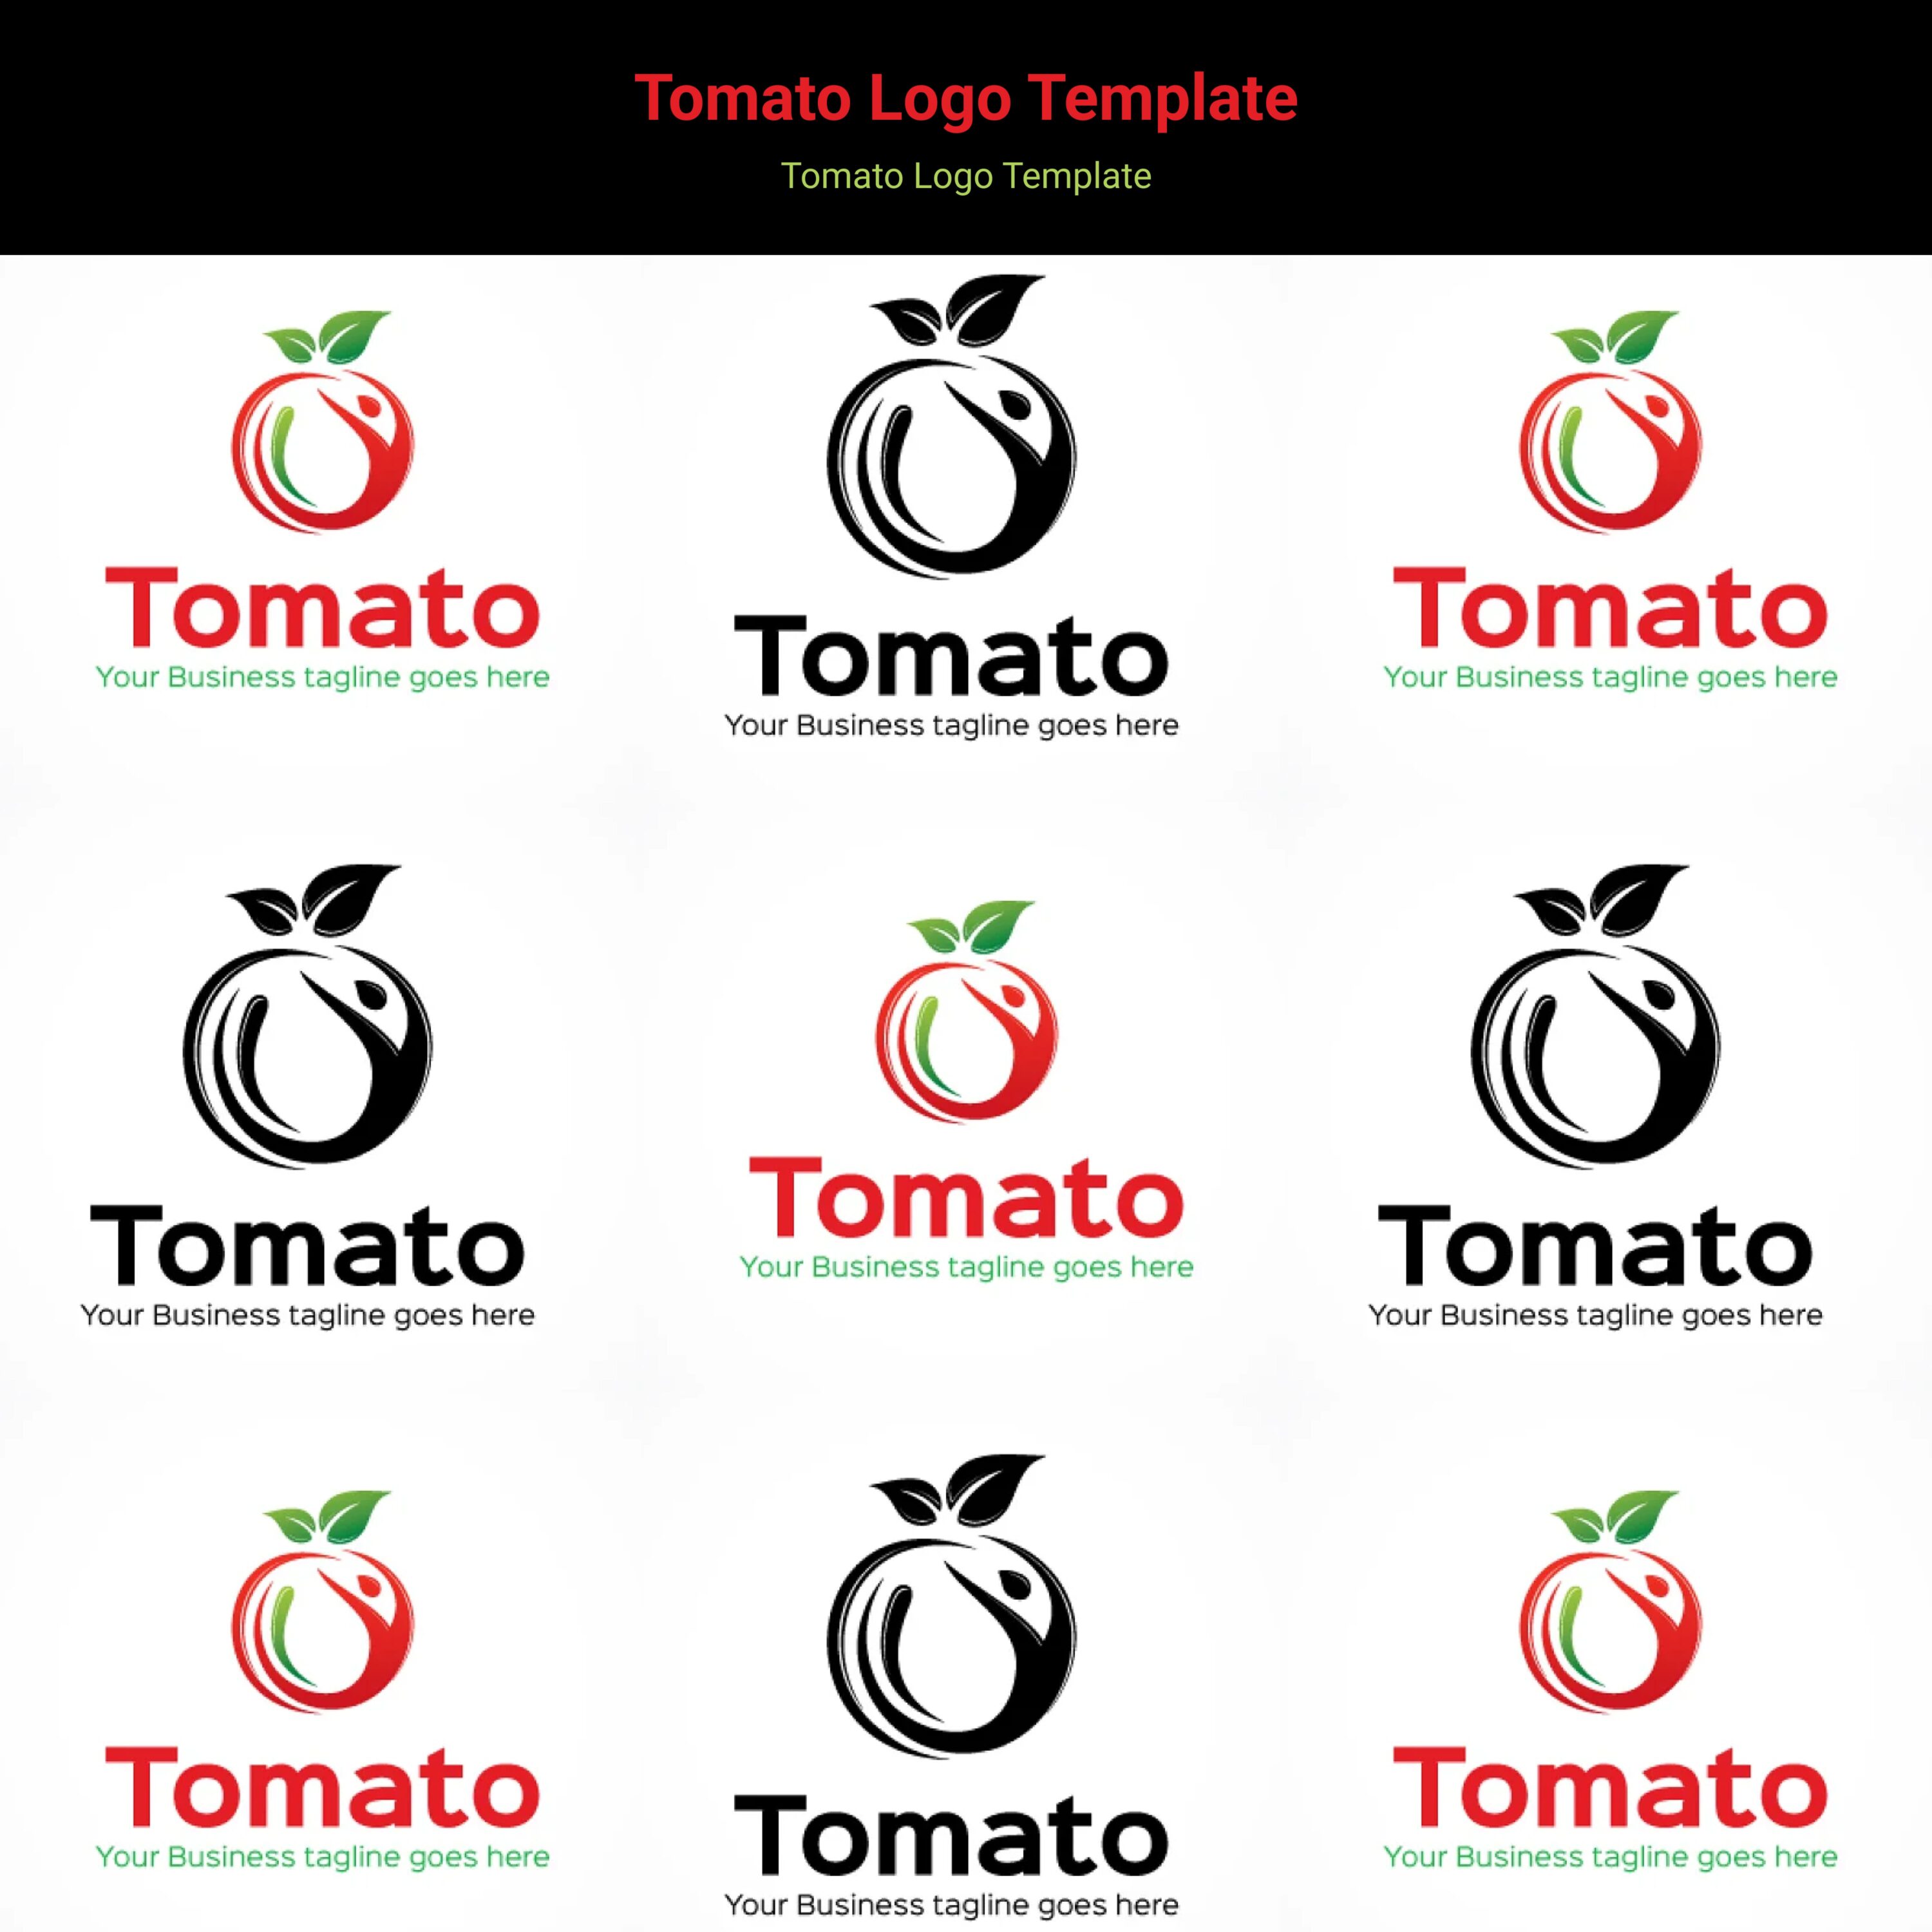 Tomato Logo Template cover.